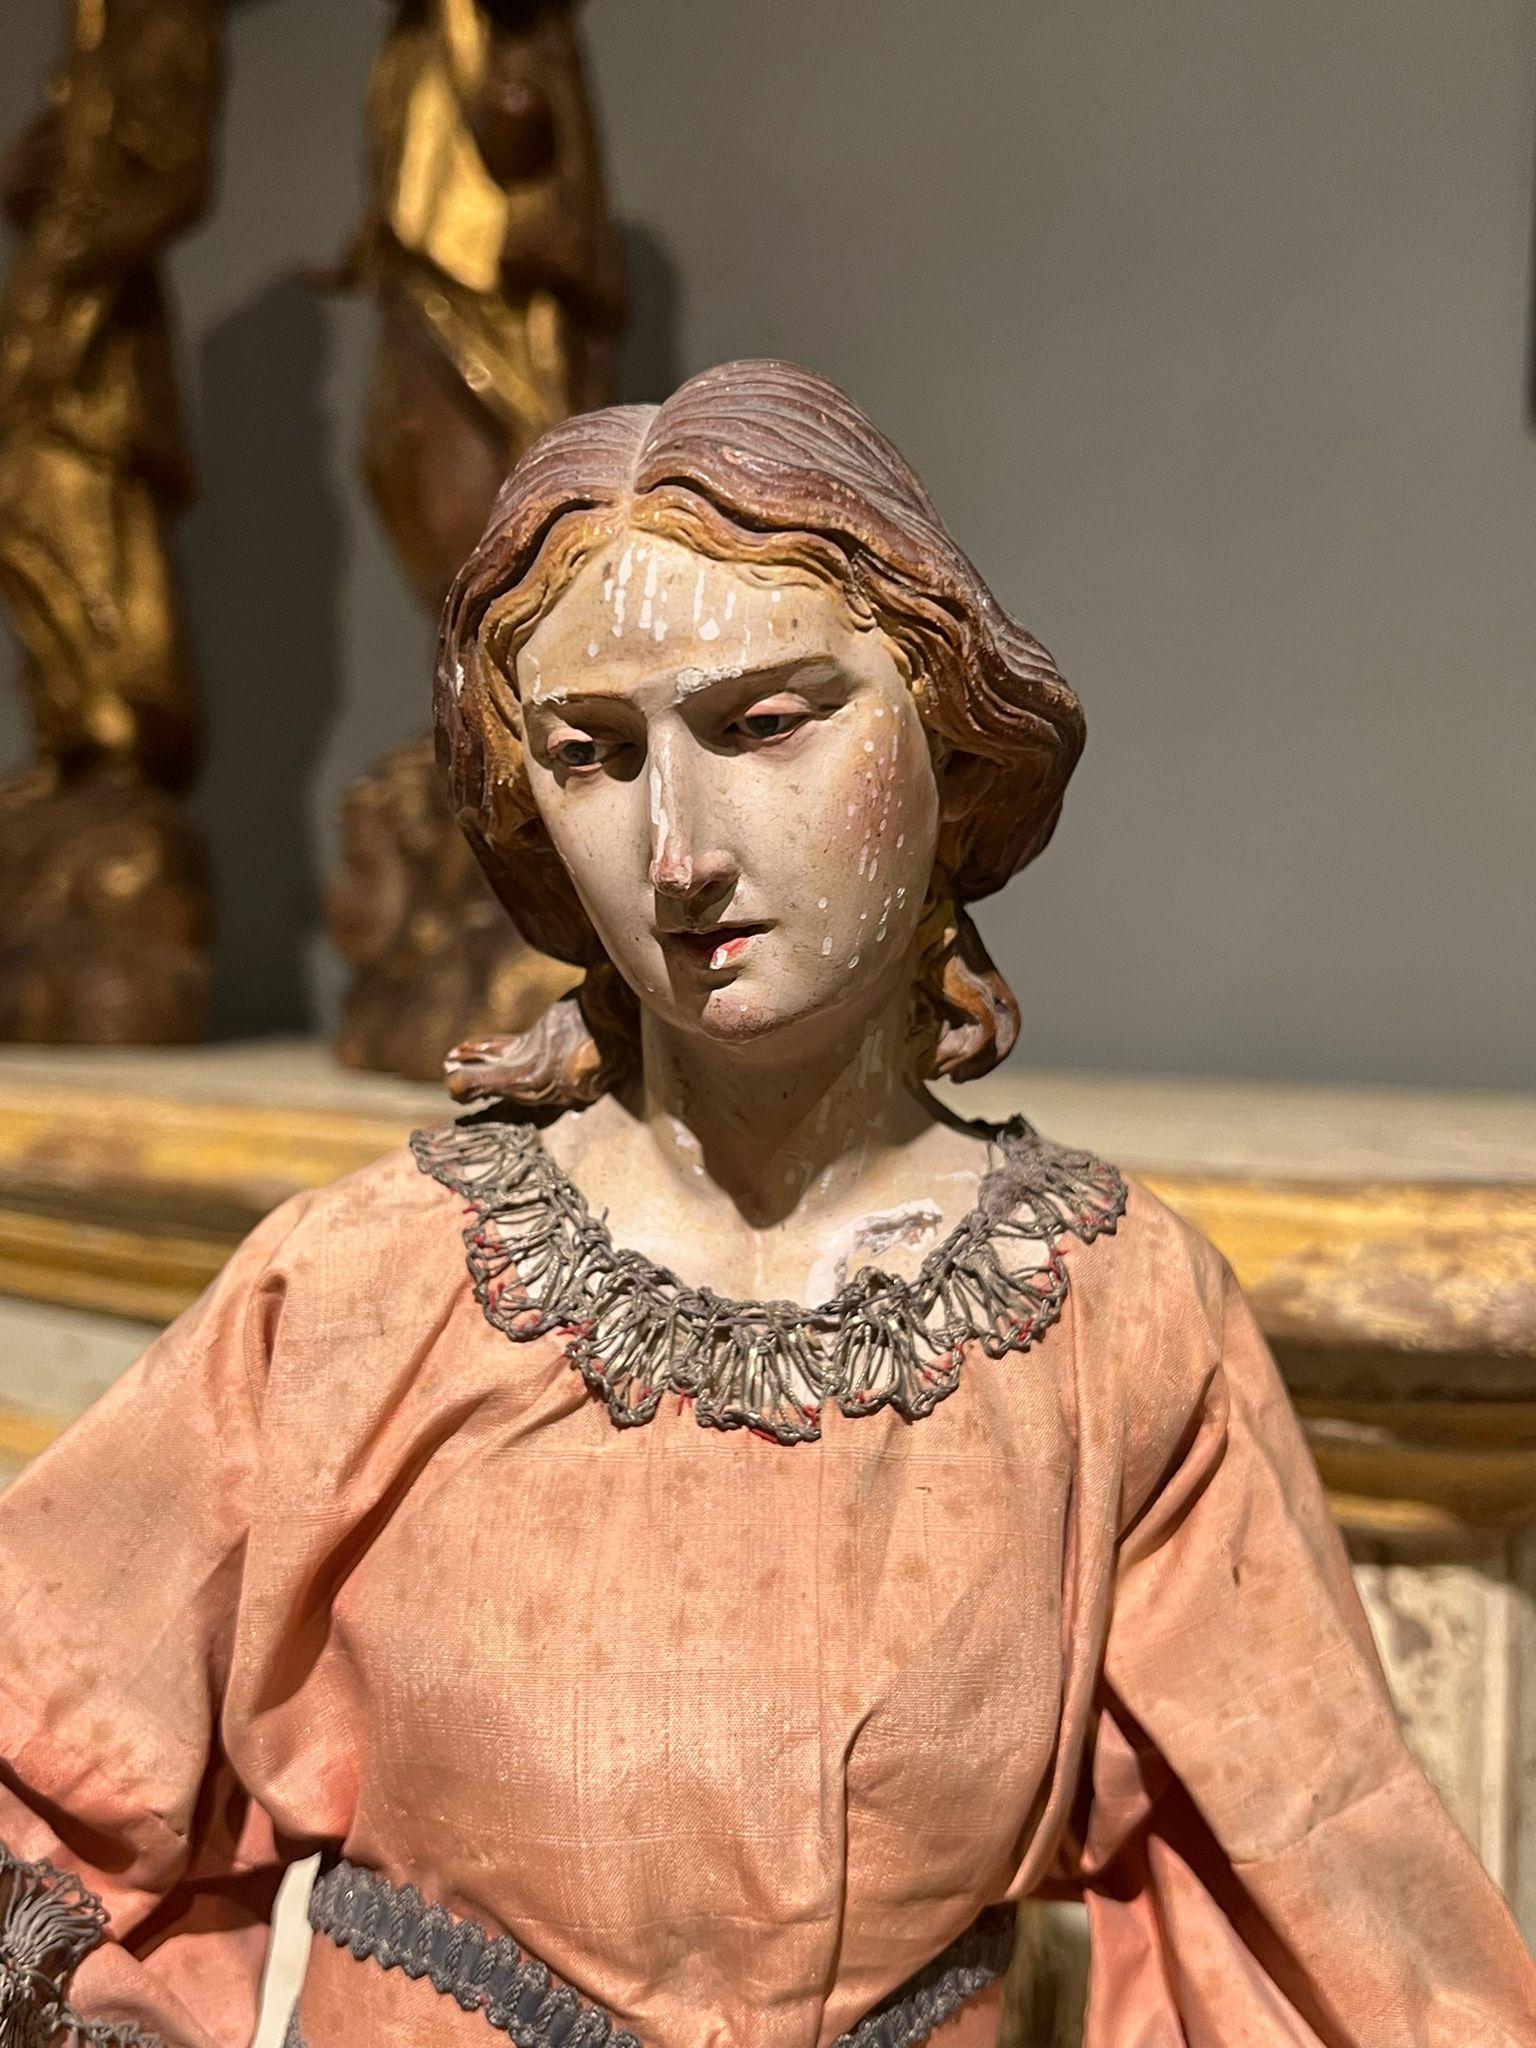 Statue en terre cuite représentant un personnage féminin. La statue est dotée d'yeux de verre et d'une robe d'origine. La qualité du visage et des mains est très raffinée, Naples, XVIIIe siècle.

Dimensions : 11x11x51